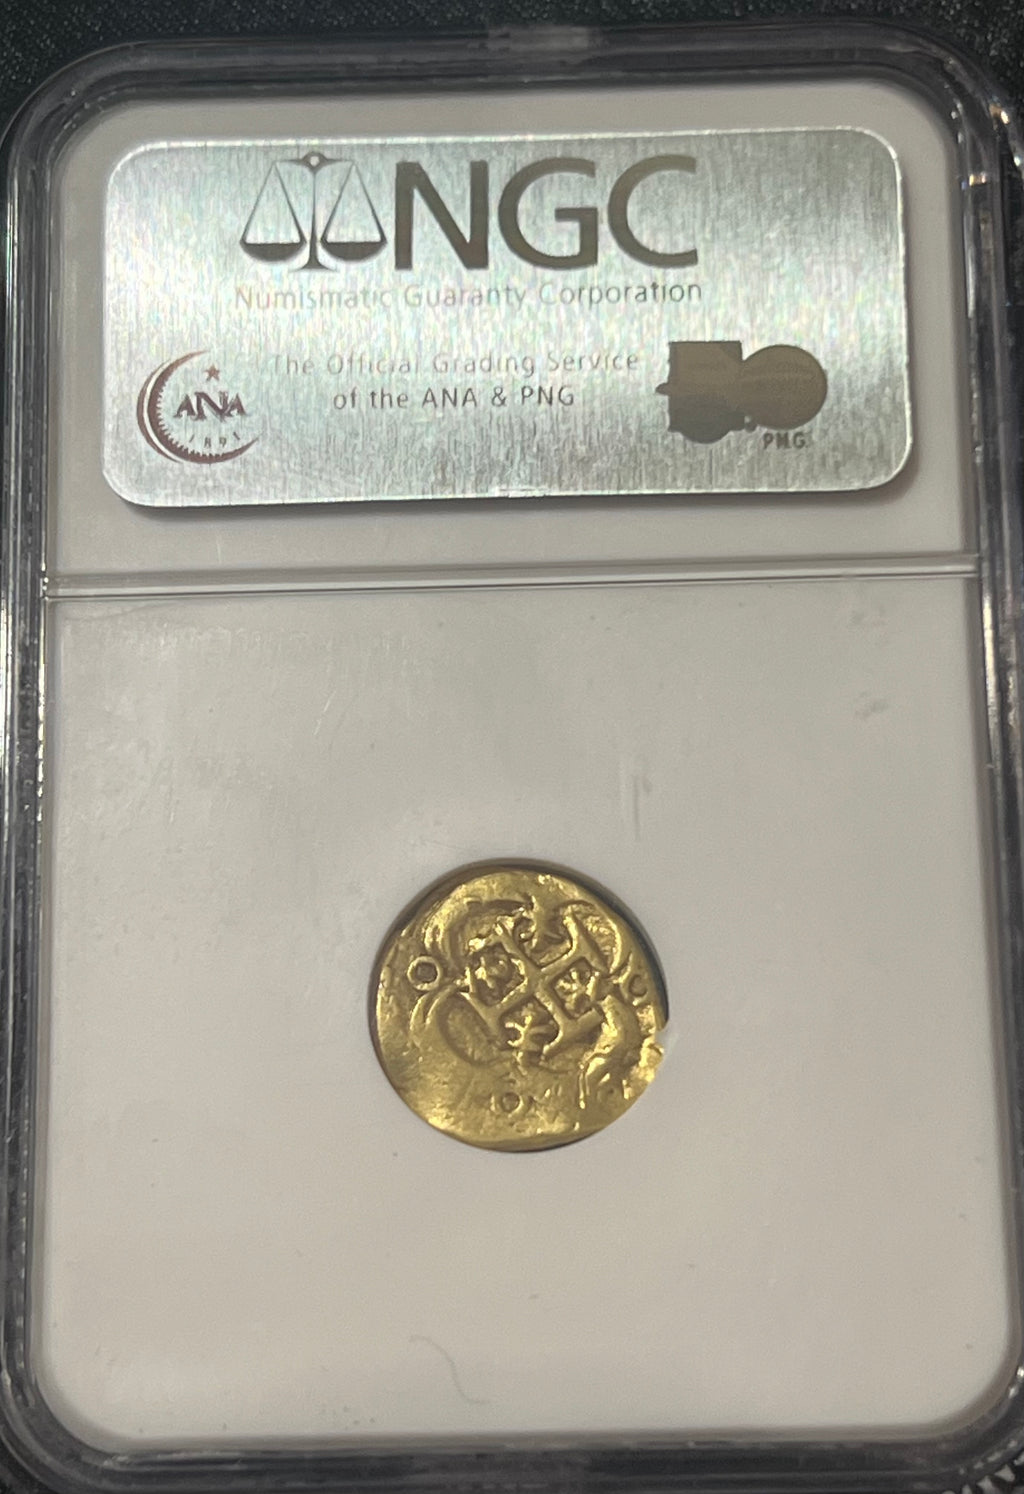 1 Escudo Spain Gold Coin NGC Grade F 15